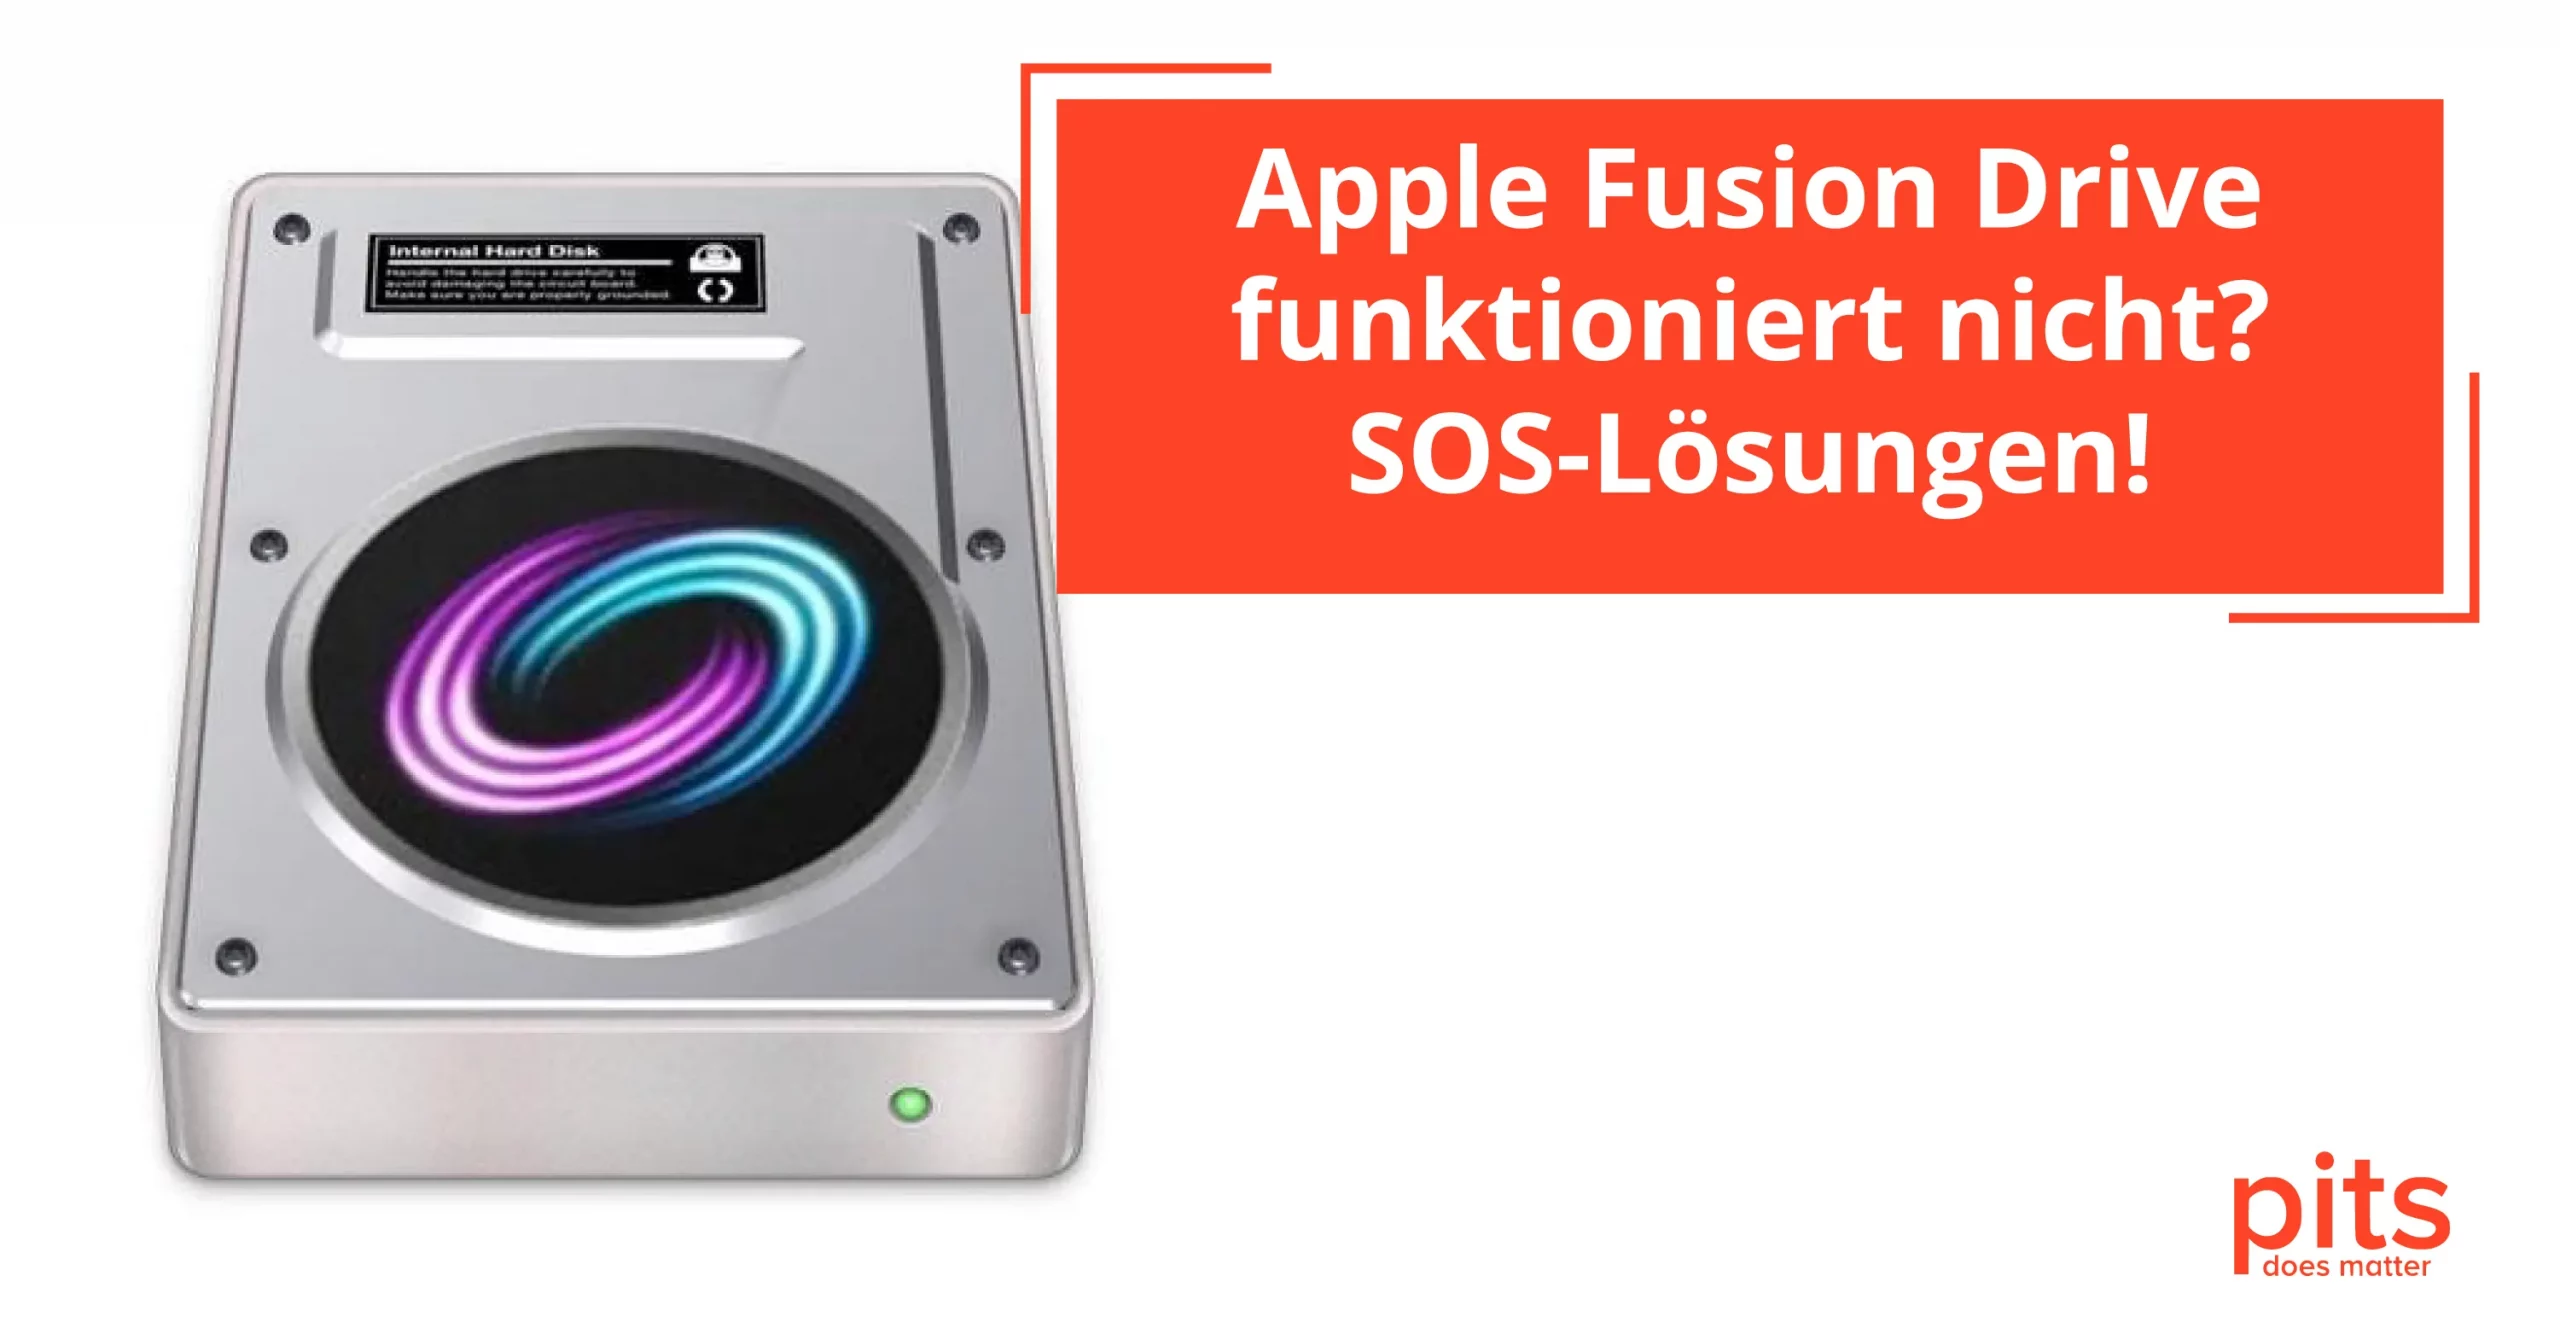 Apple Fusion Drive funktioniert nicht – Was nun?